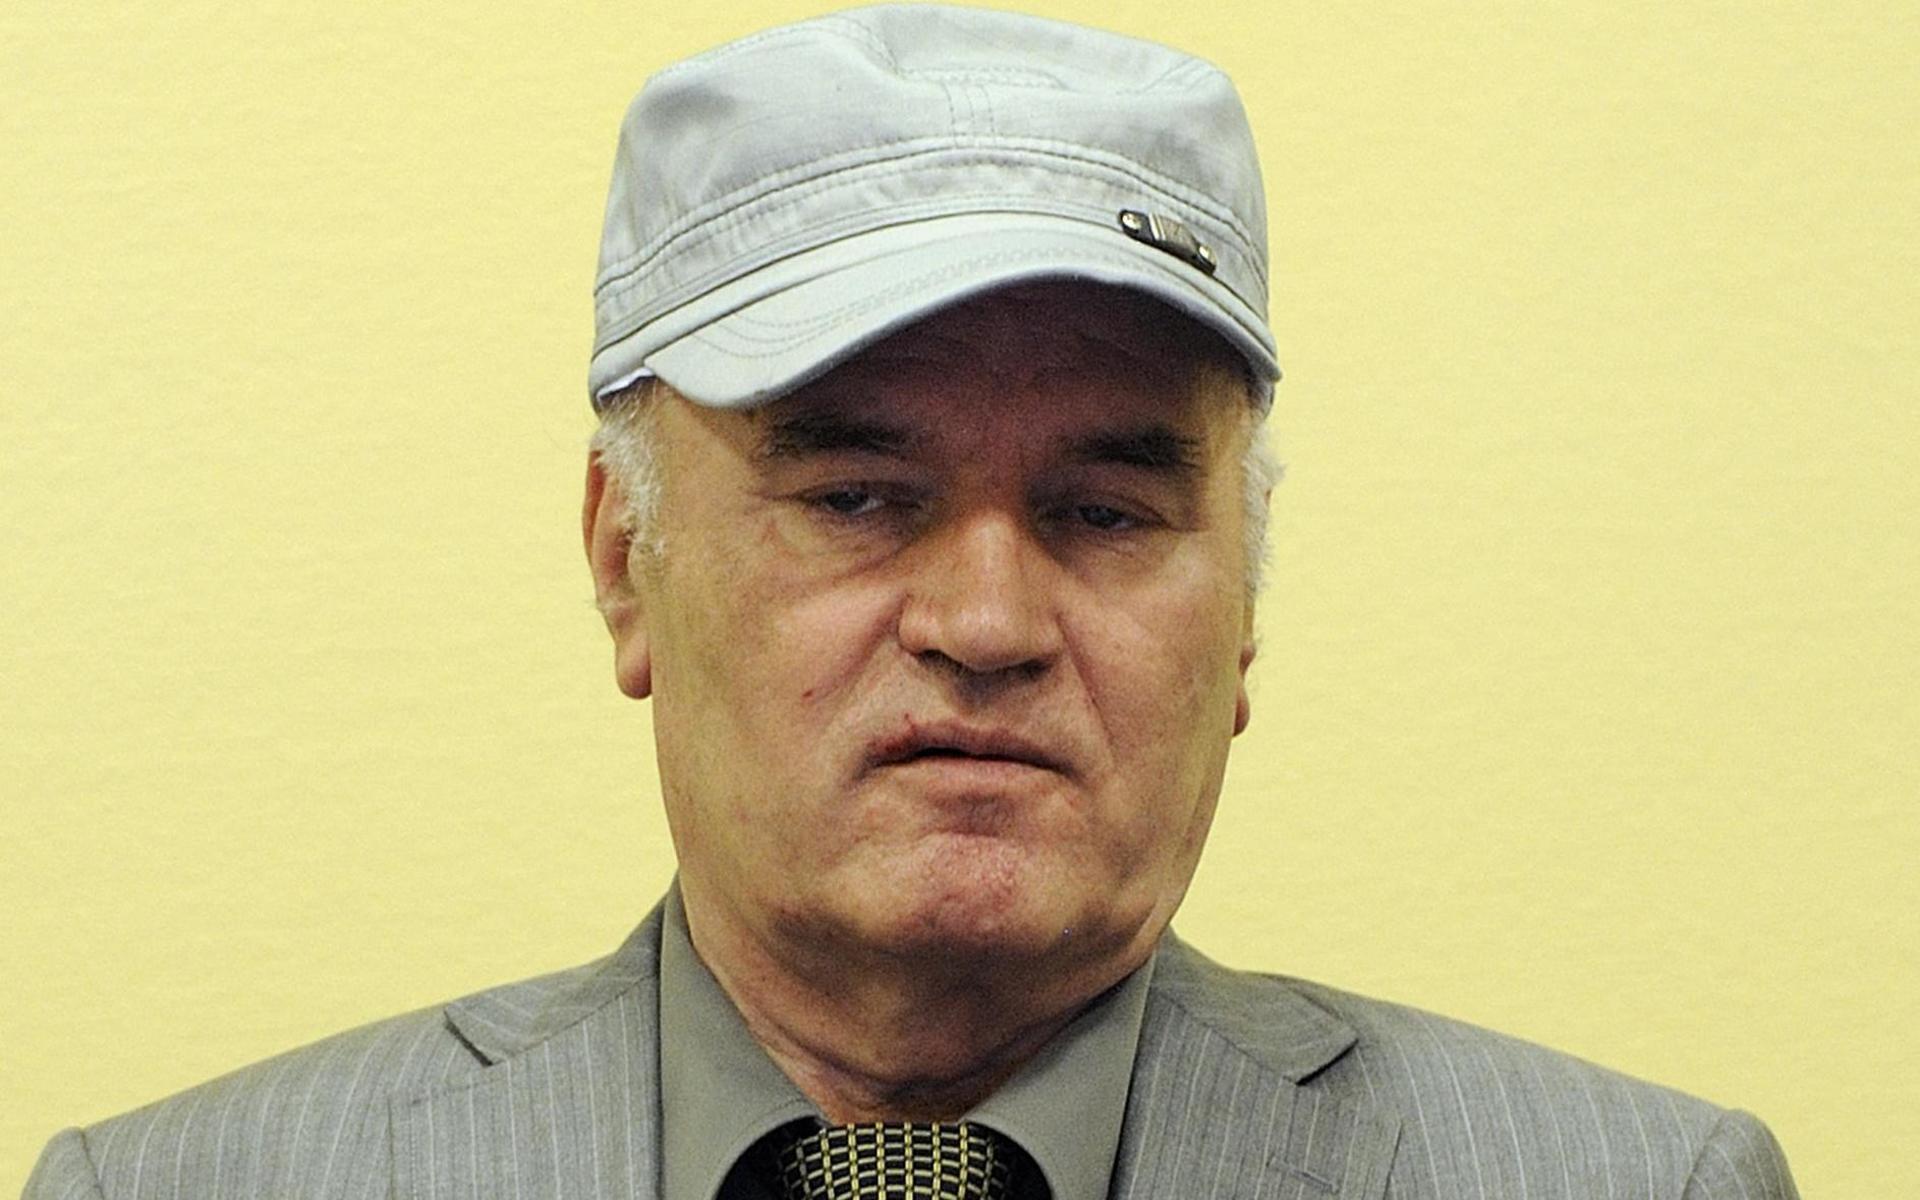 Ratko Mladic dömdes 2017 för krigsförbrytelser begångna av bosnienserbiska styrkor mot bosniaker och bosnienkroater under Bosnienkriget 1992–1995. Han fälldes bland annat för massakern i Srebrenica, då omkring 8 000 bosniakiska pojkar och män kallblodigt mördades i det värsta krigsbrottet i Europa sedan andra världskriget. Bild från 2011.